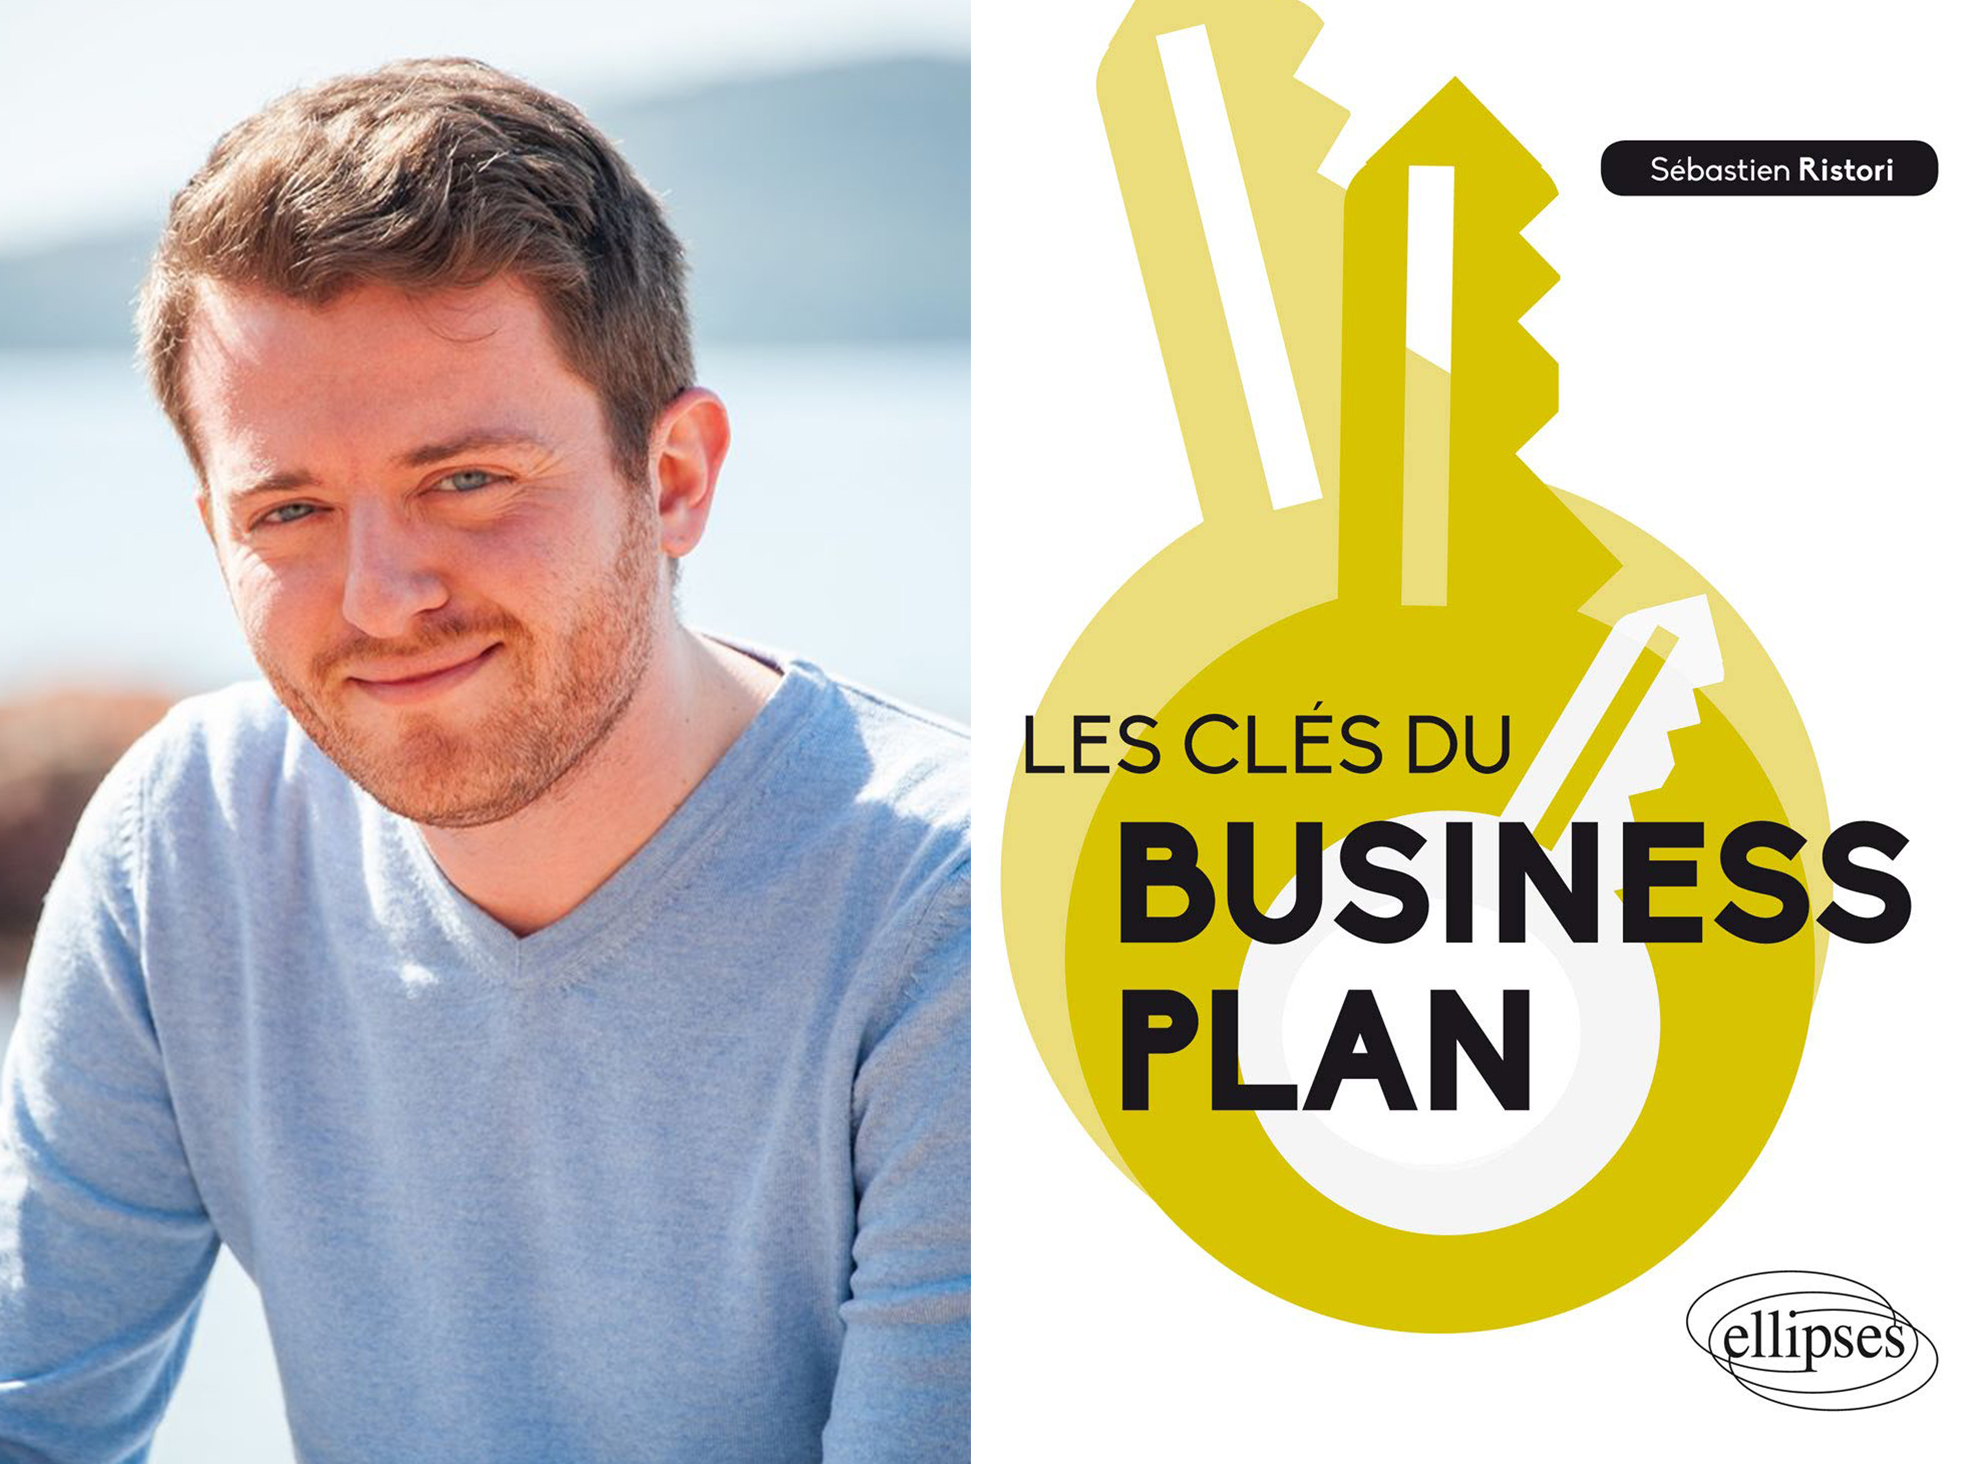 Sébastien Ristori donne « Les clés du business plan »